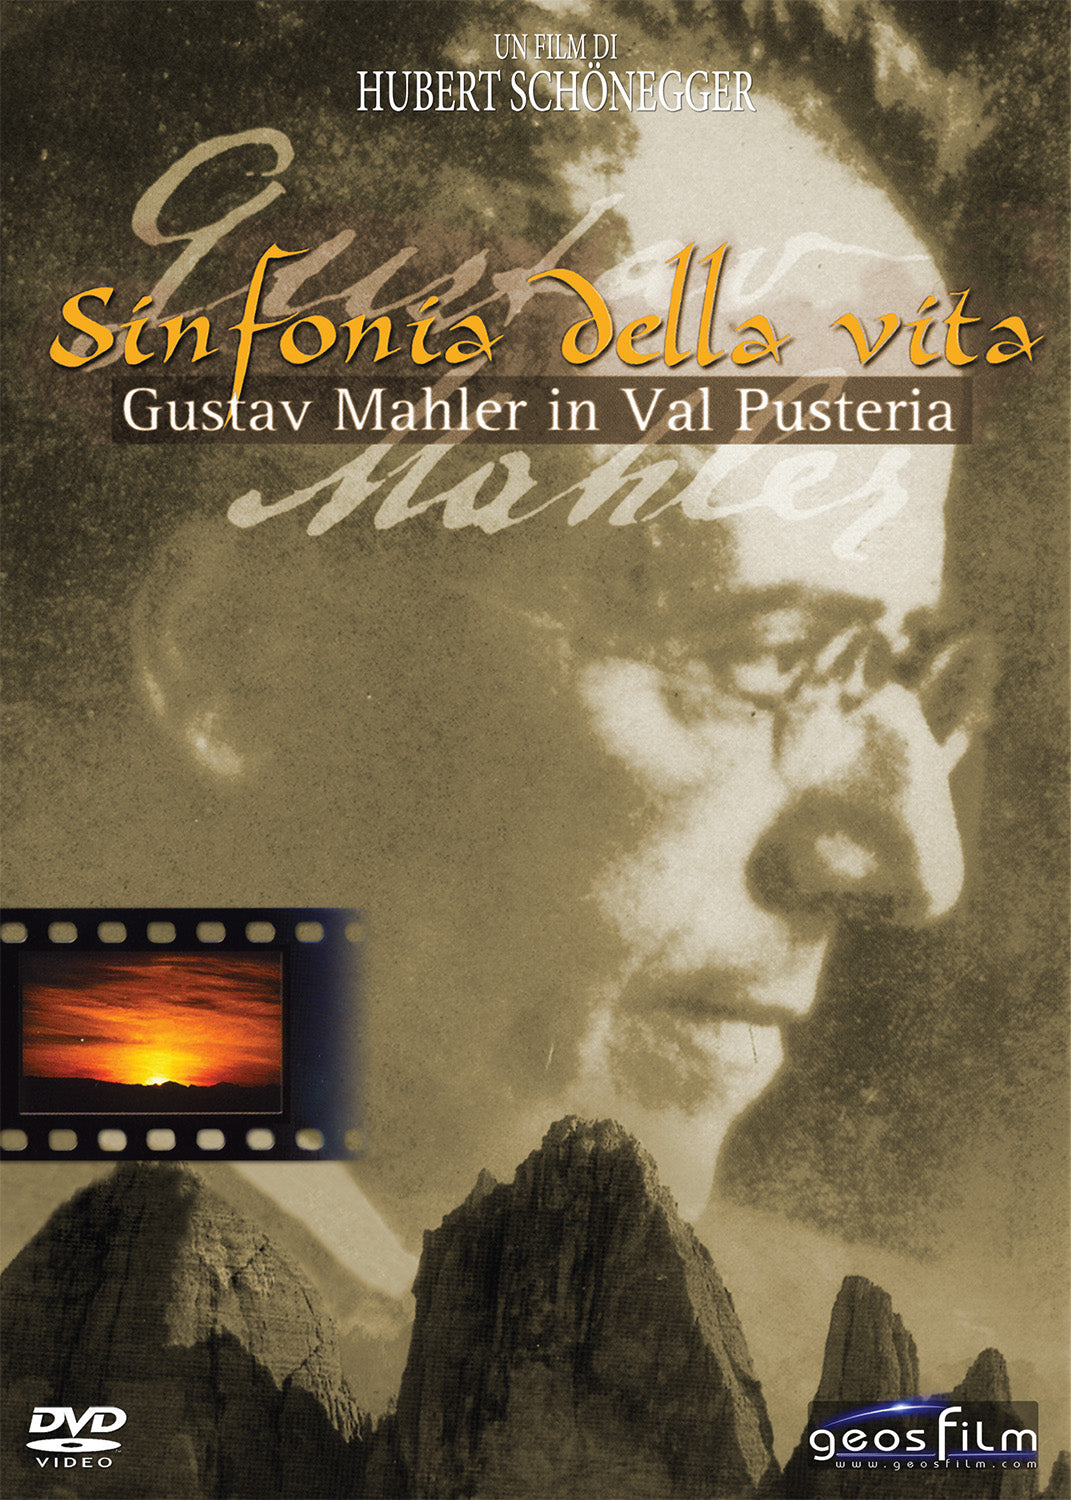 Gustav Mahler im Pustertal